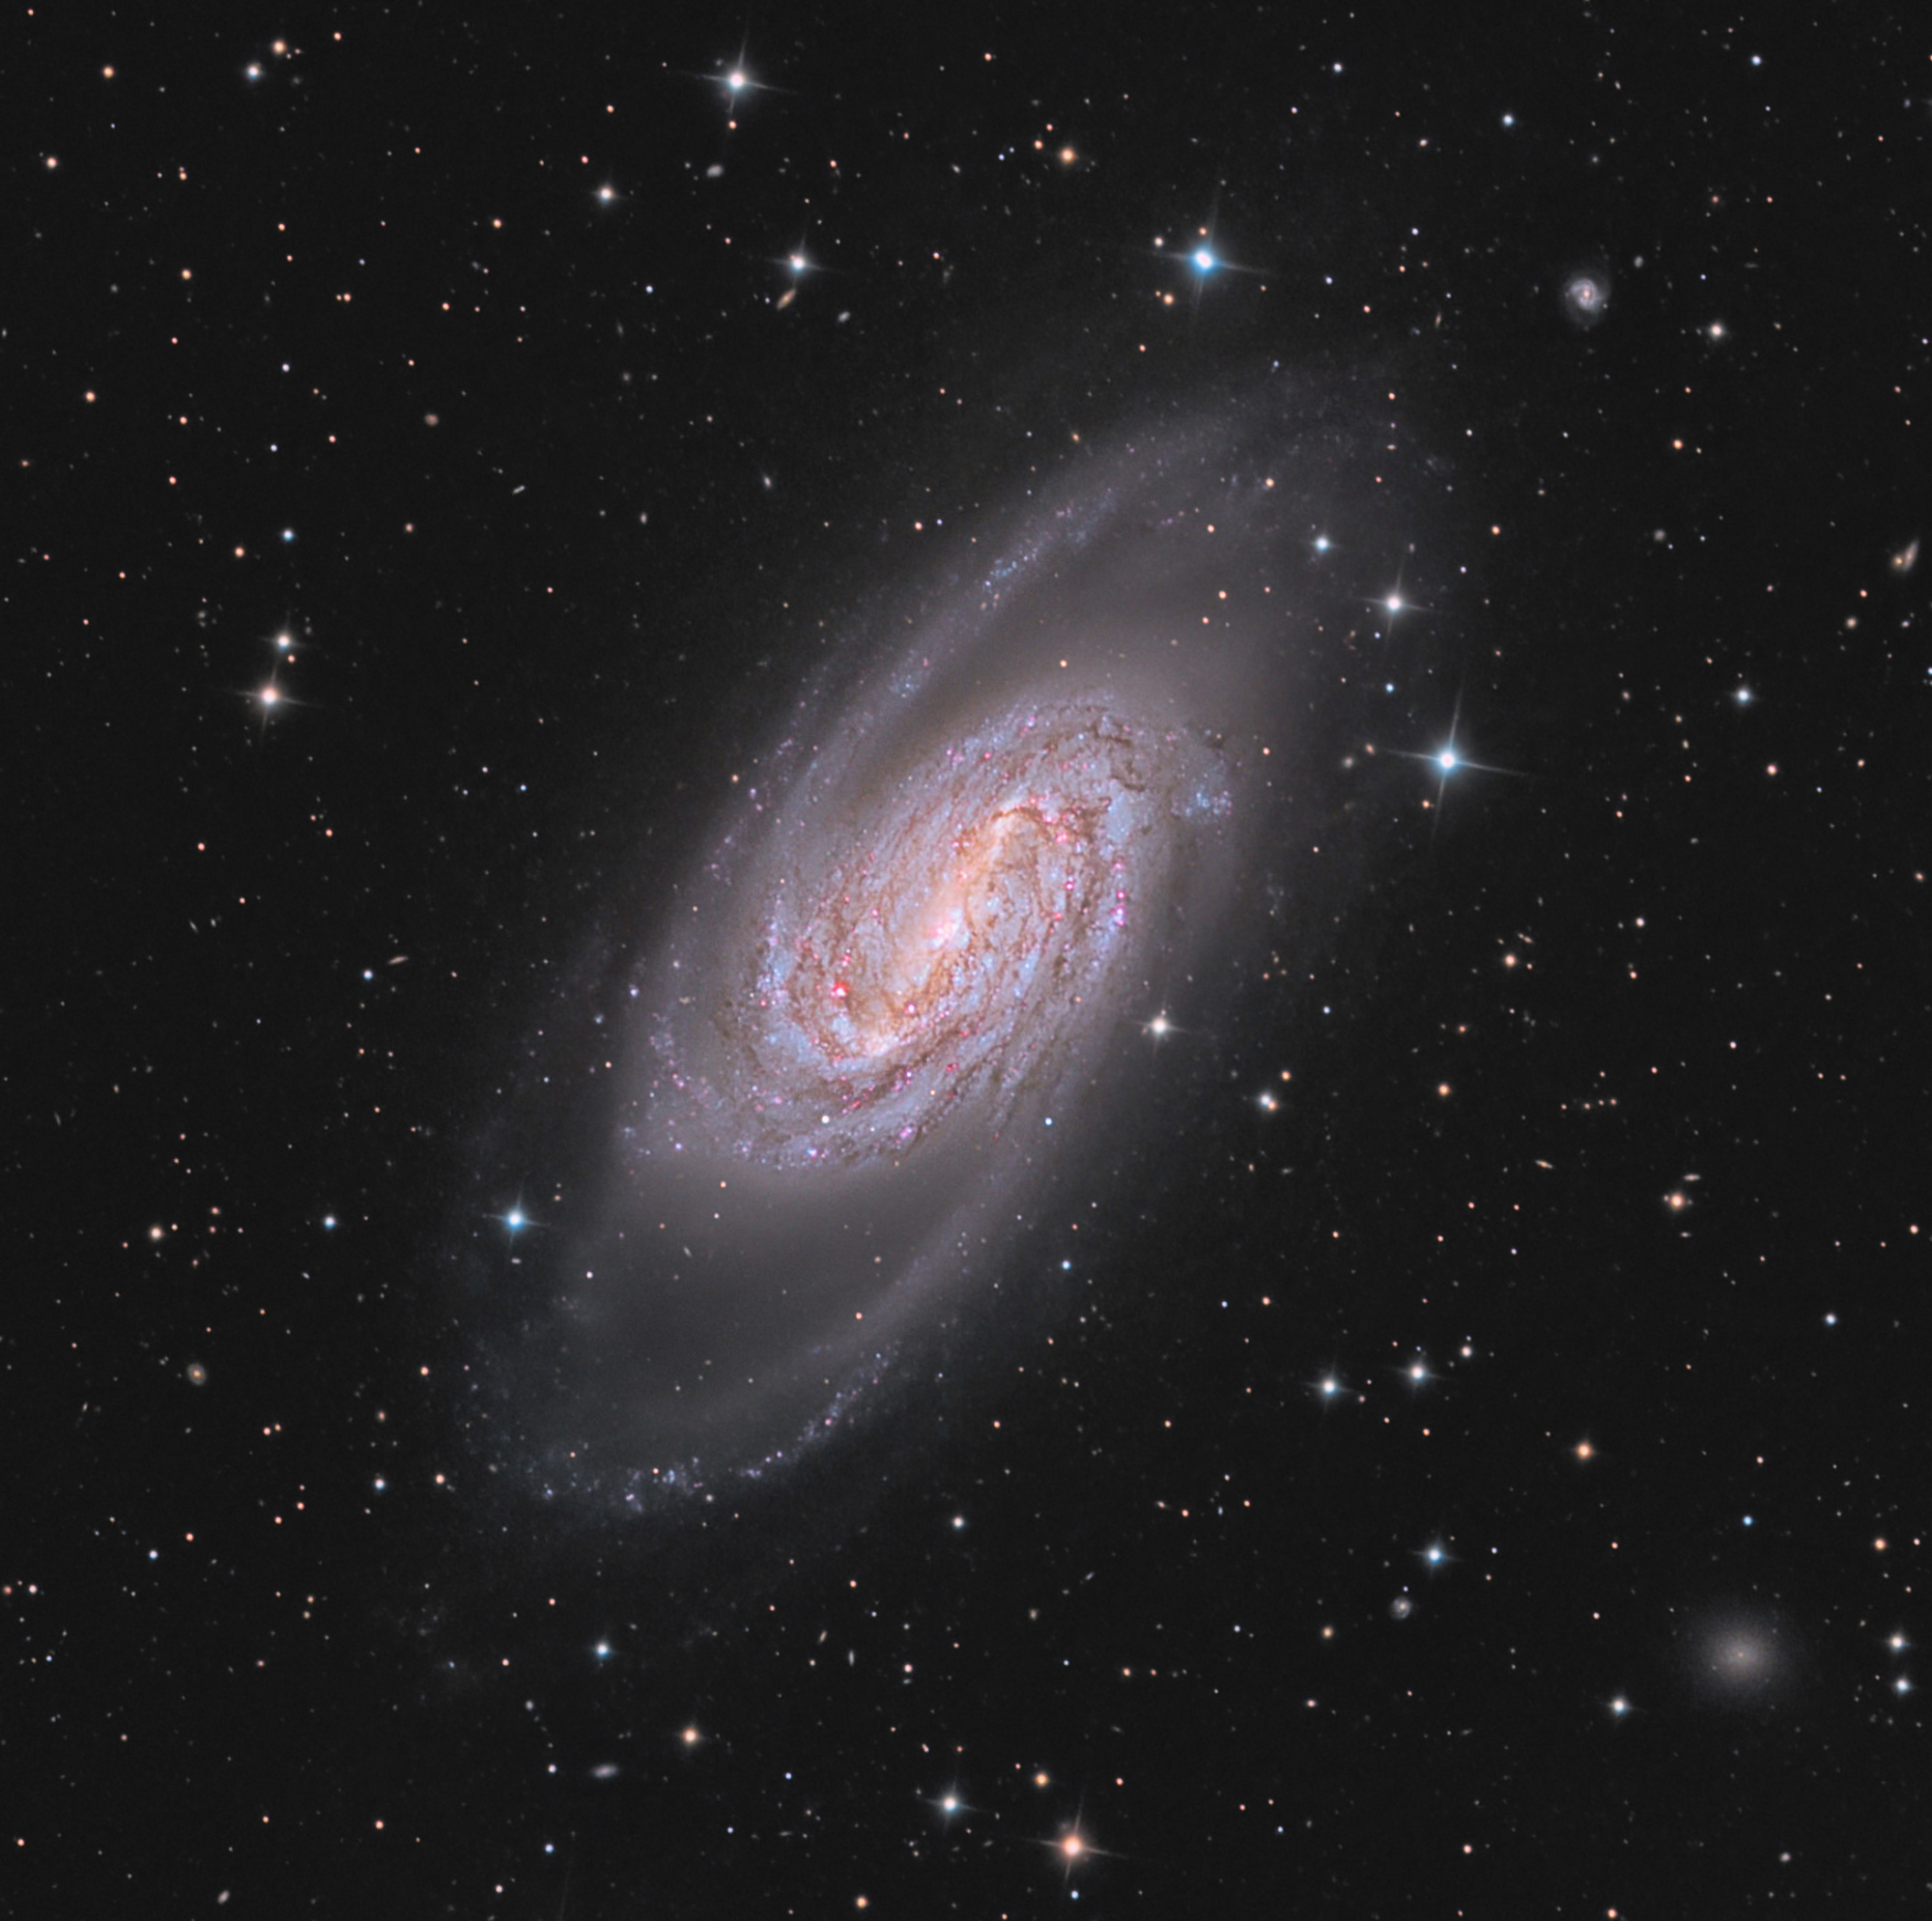 NGC-2903-LRVB-en-cours-5000_7_zoom.thumb.jpg.7ed7dca8b3a54df19b640d1751138188.jpg